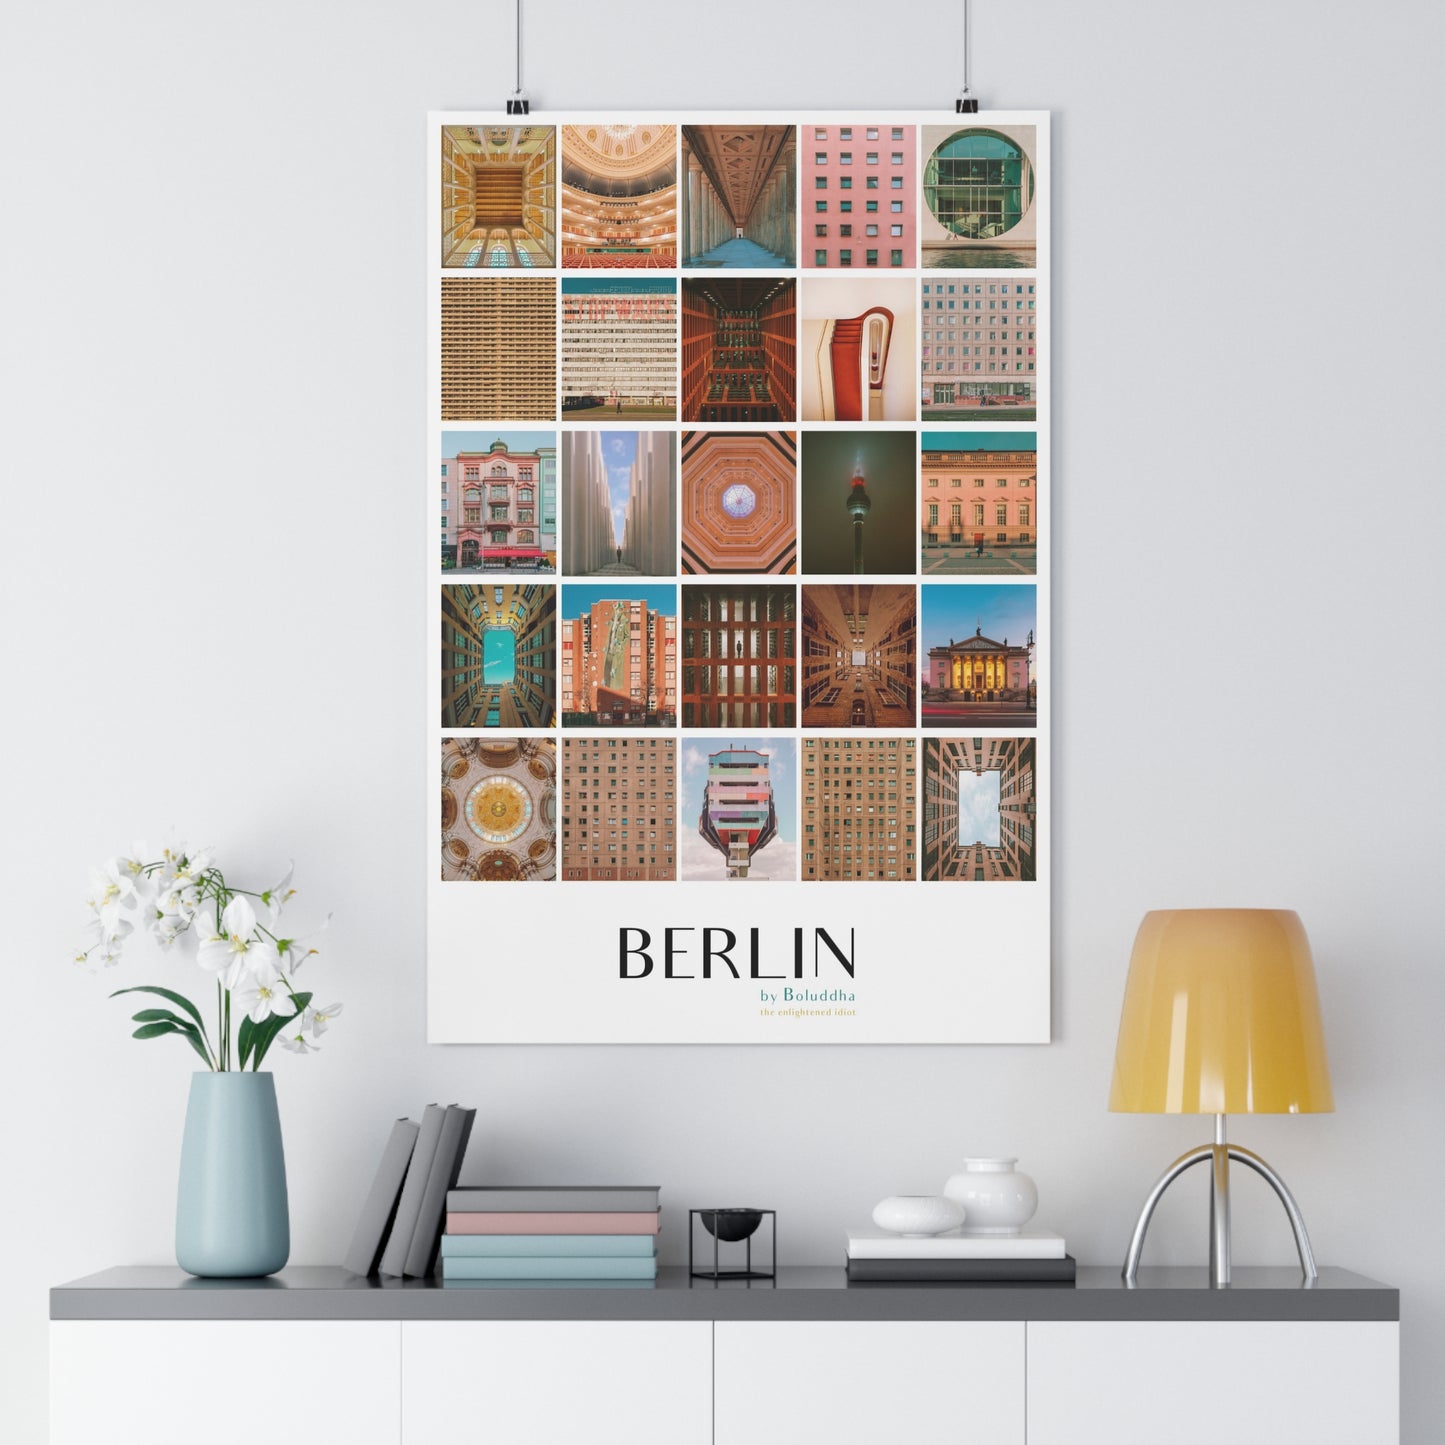 Berlin by Boluddha